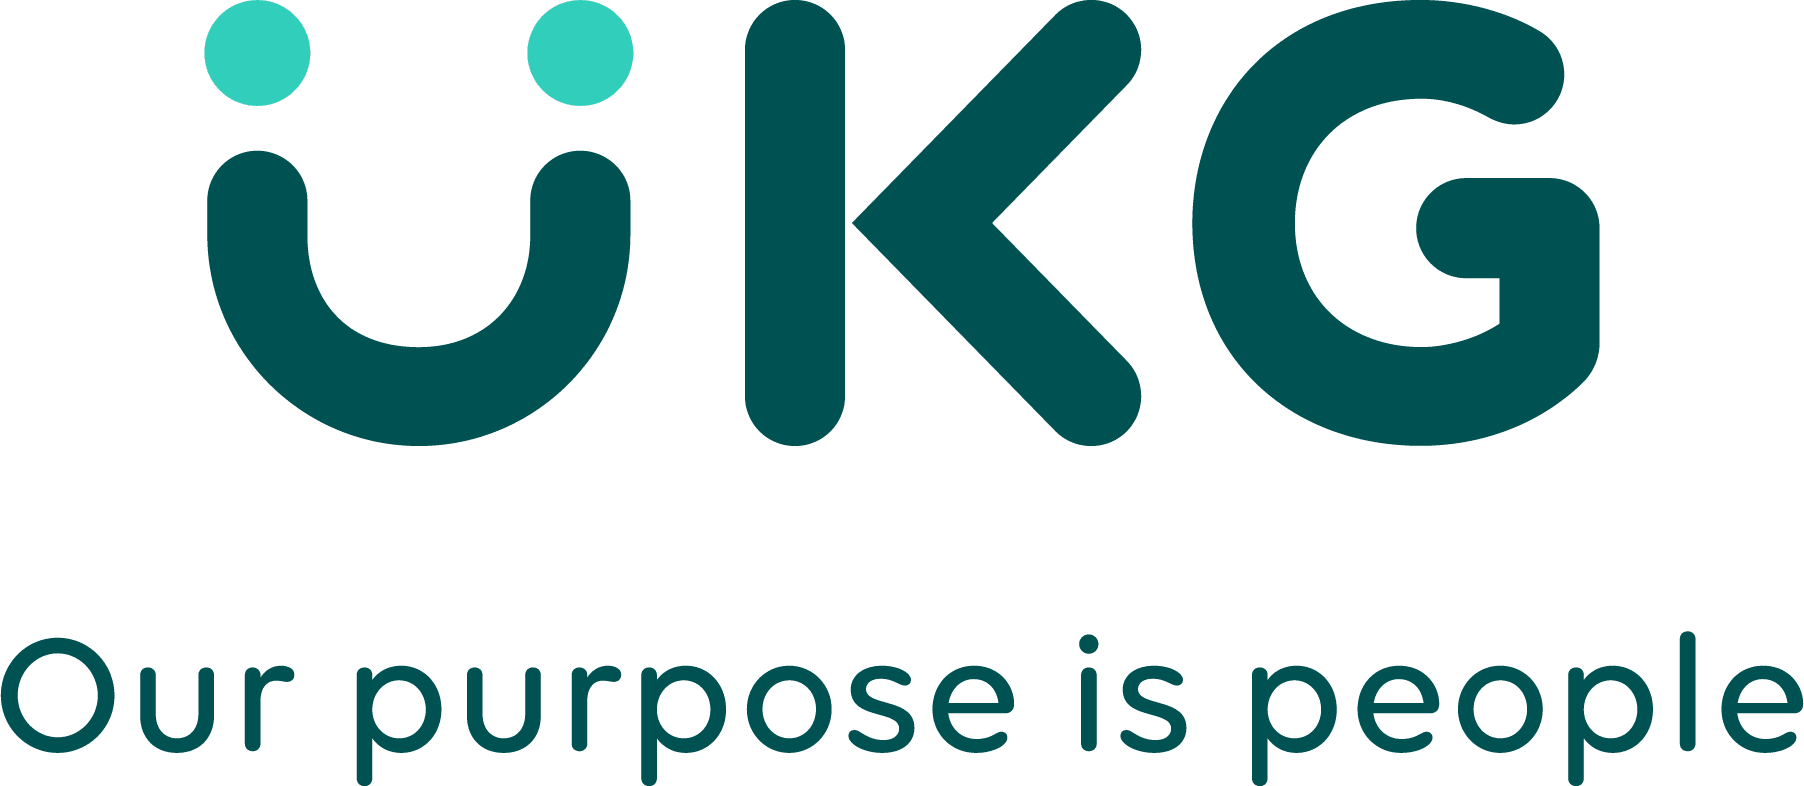 UKG logo